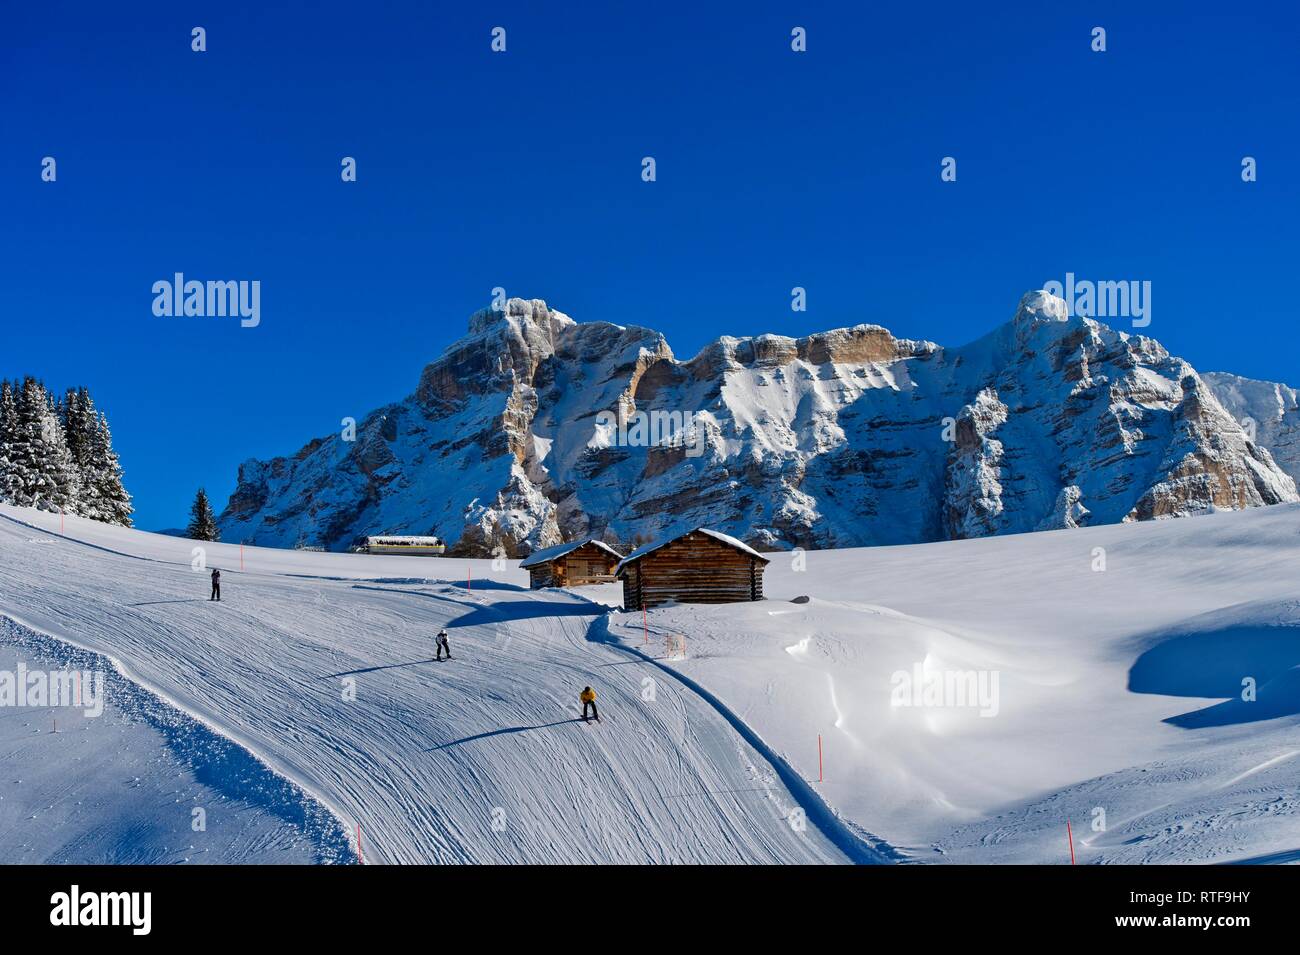 Pista de esquí en la zona de esquí Alta Badia, Corvara, Tirol del Sur, Italia Foto de stock